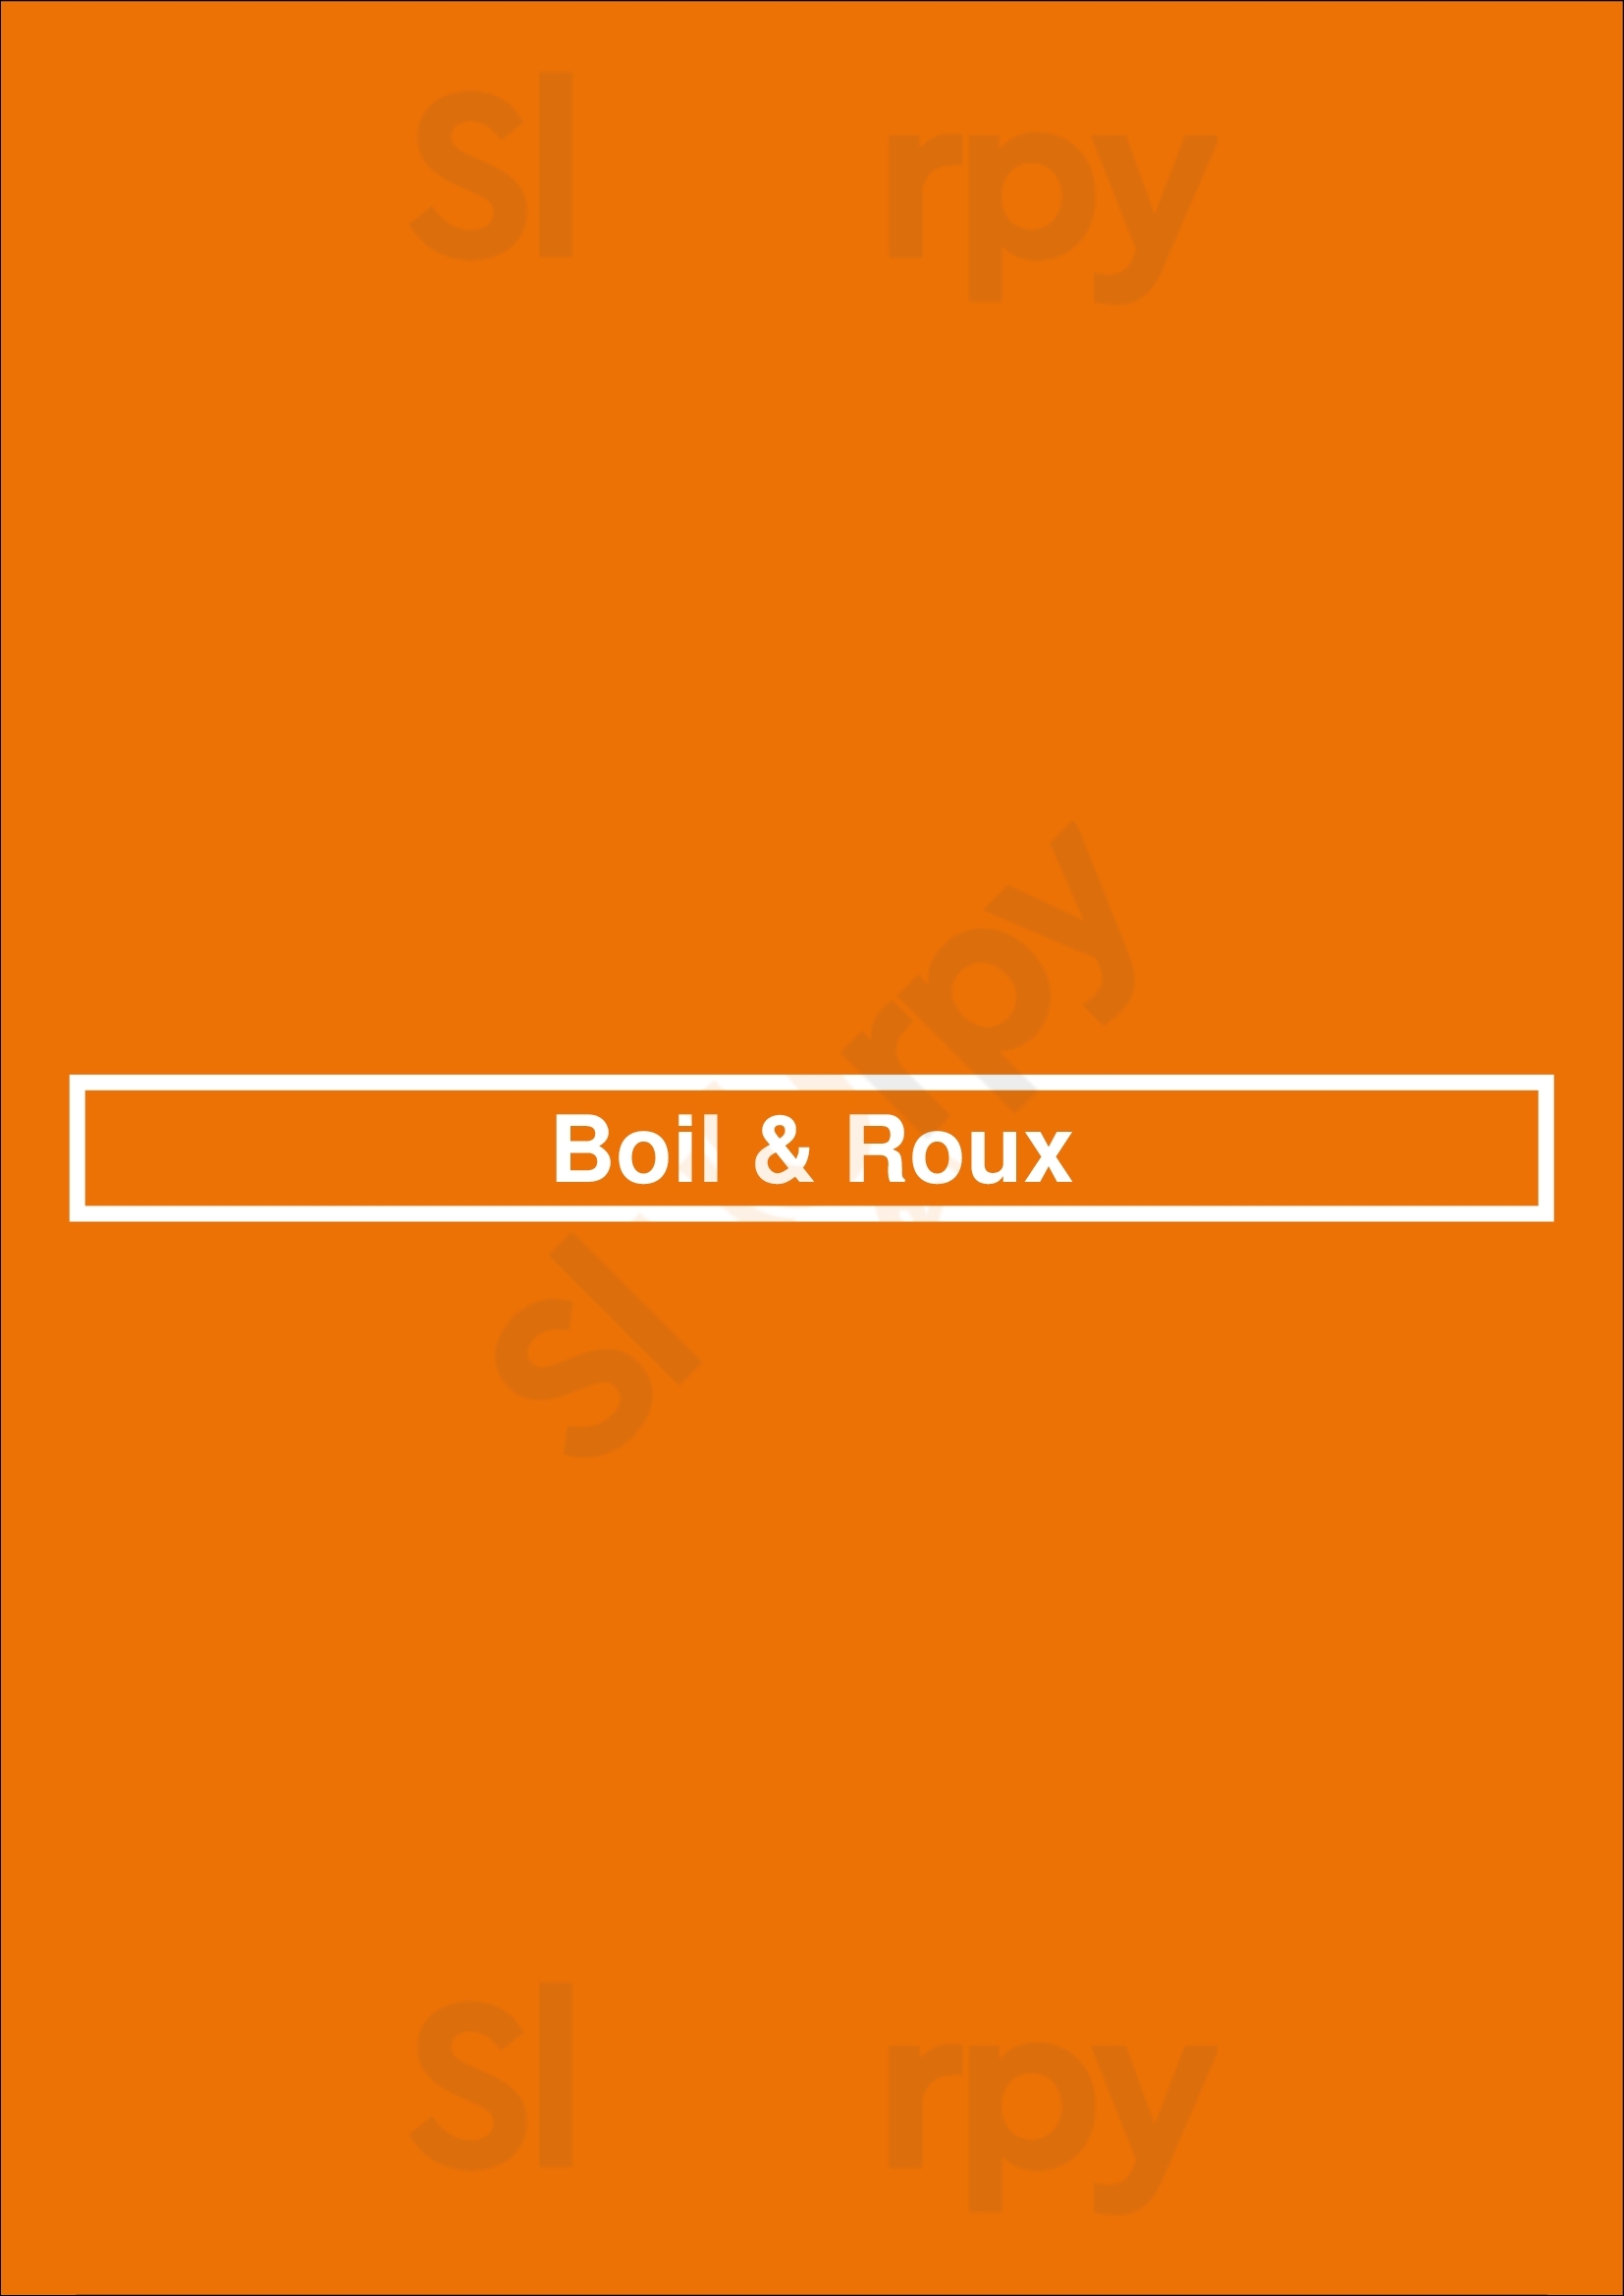 Boil & Roux Baton Rouge Menu - 1